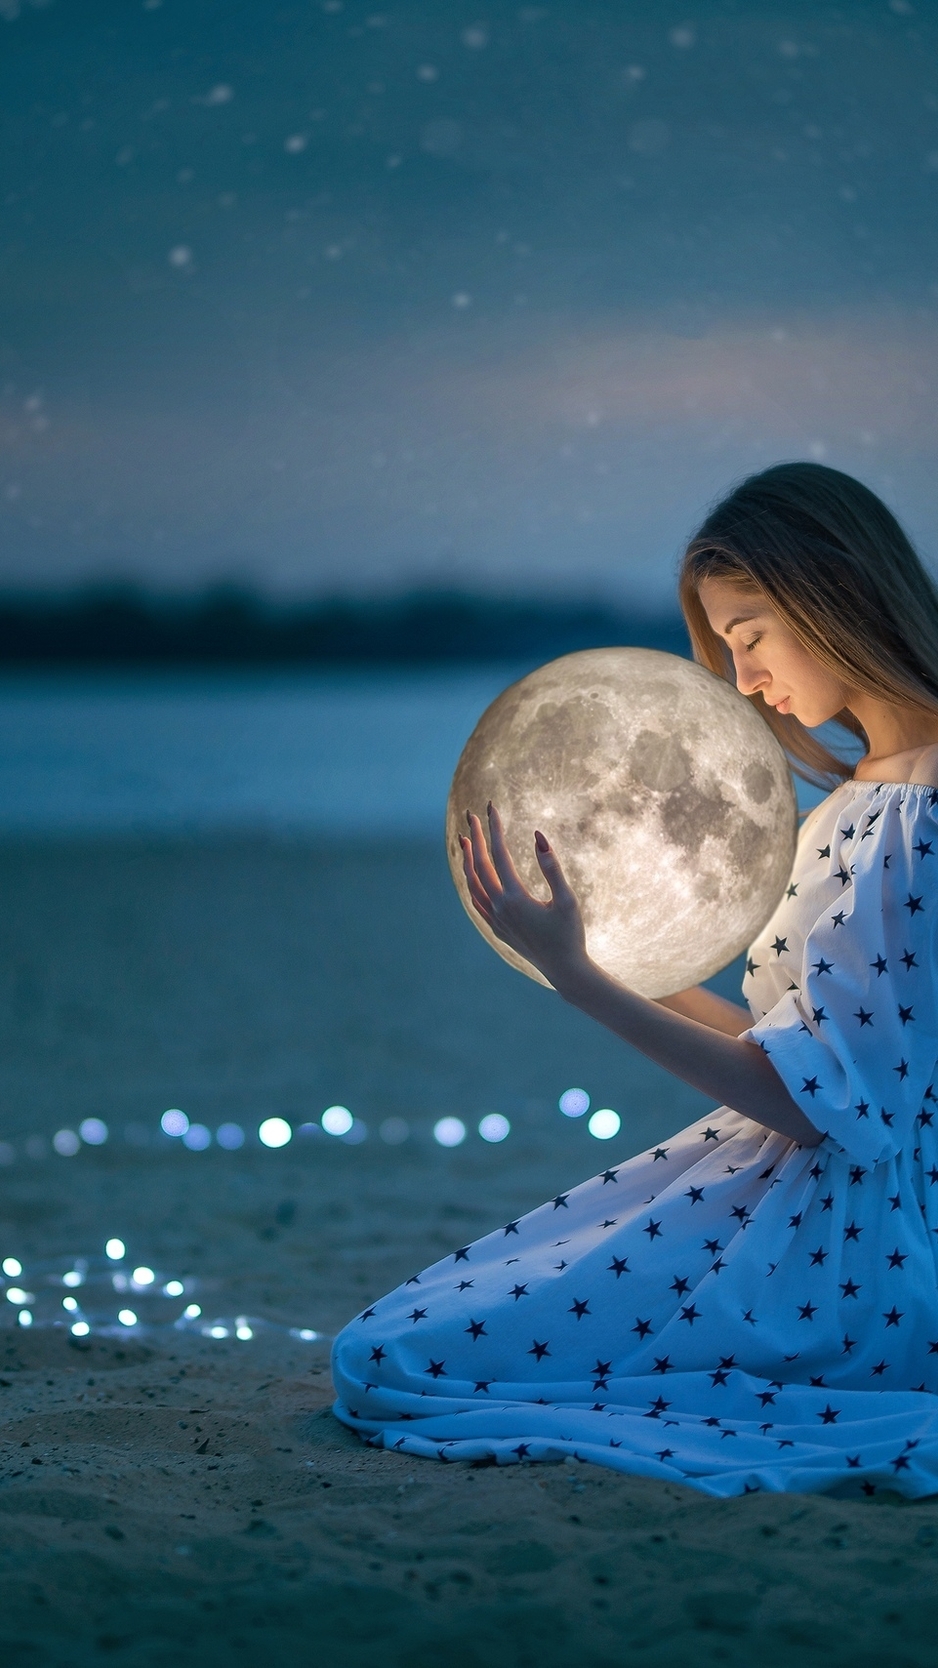 Картинка: Девушка, платье, сидит, песок, шар, сфера, планета, луна, огоньки, держит